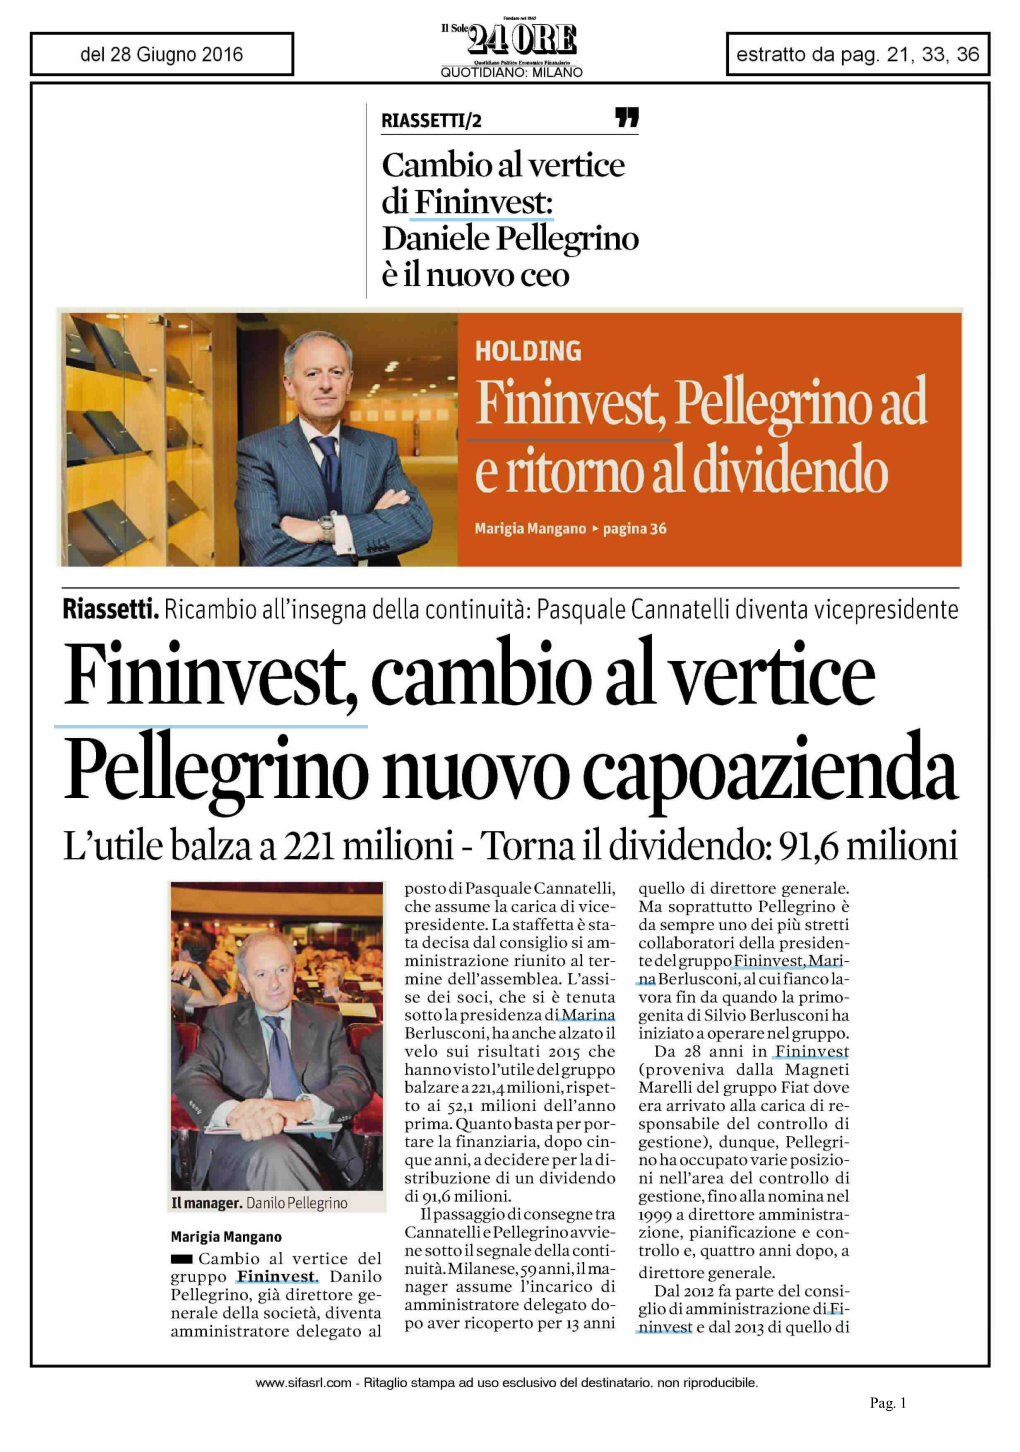 Fininvest, Cambio Al Vertice Pellegrino Nuovo Capoazienda